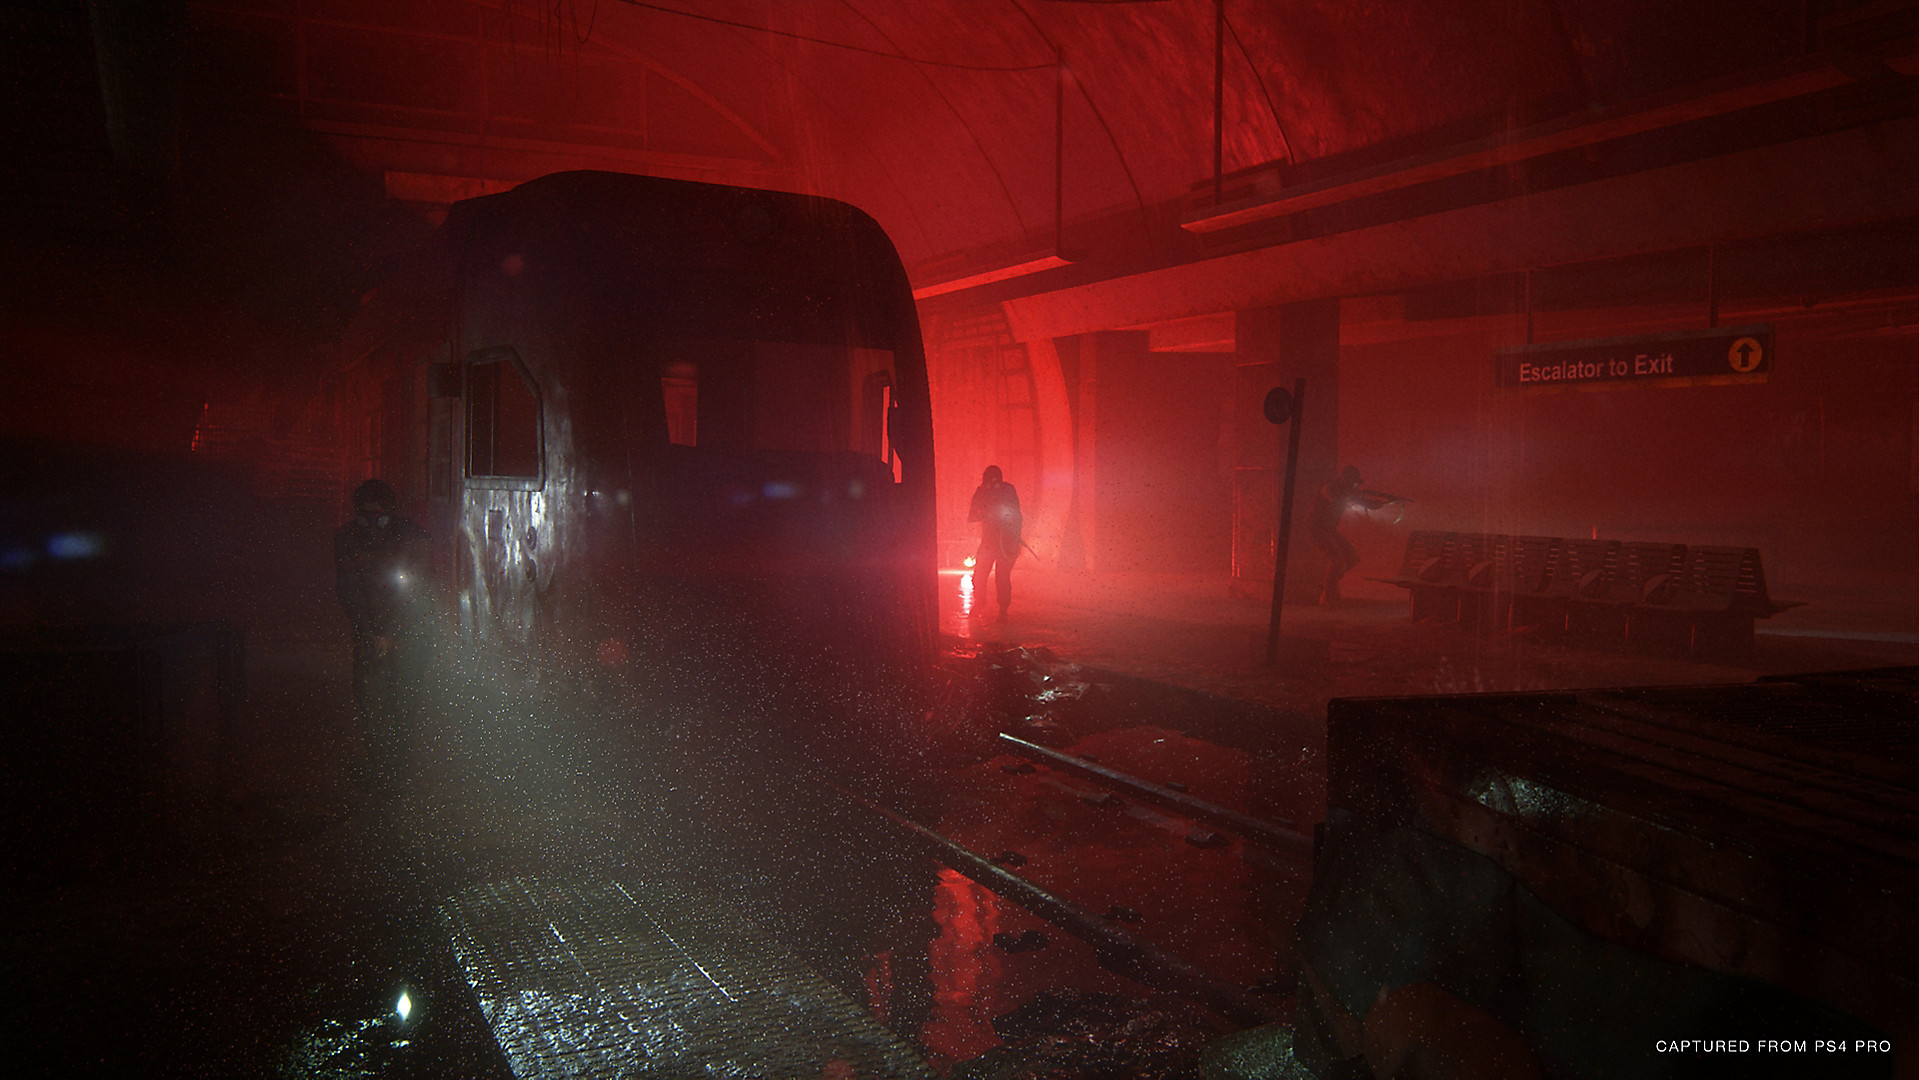 《最后的生还者2》大量新截图公开 捕捉自PS4 Pro版